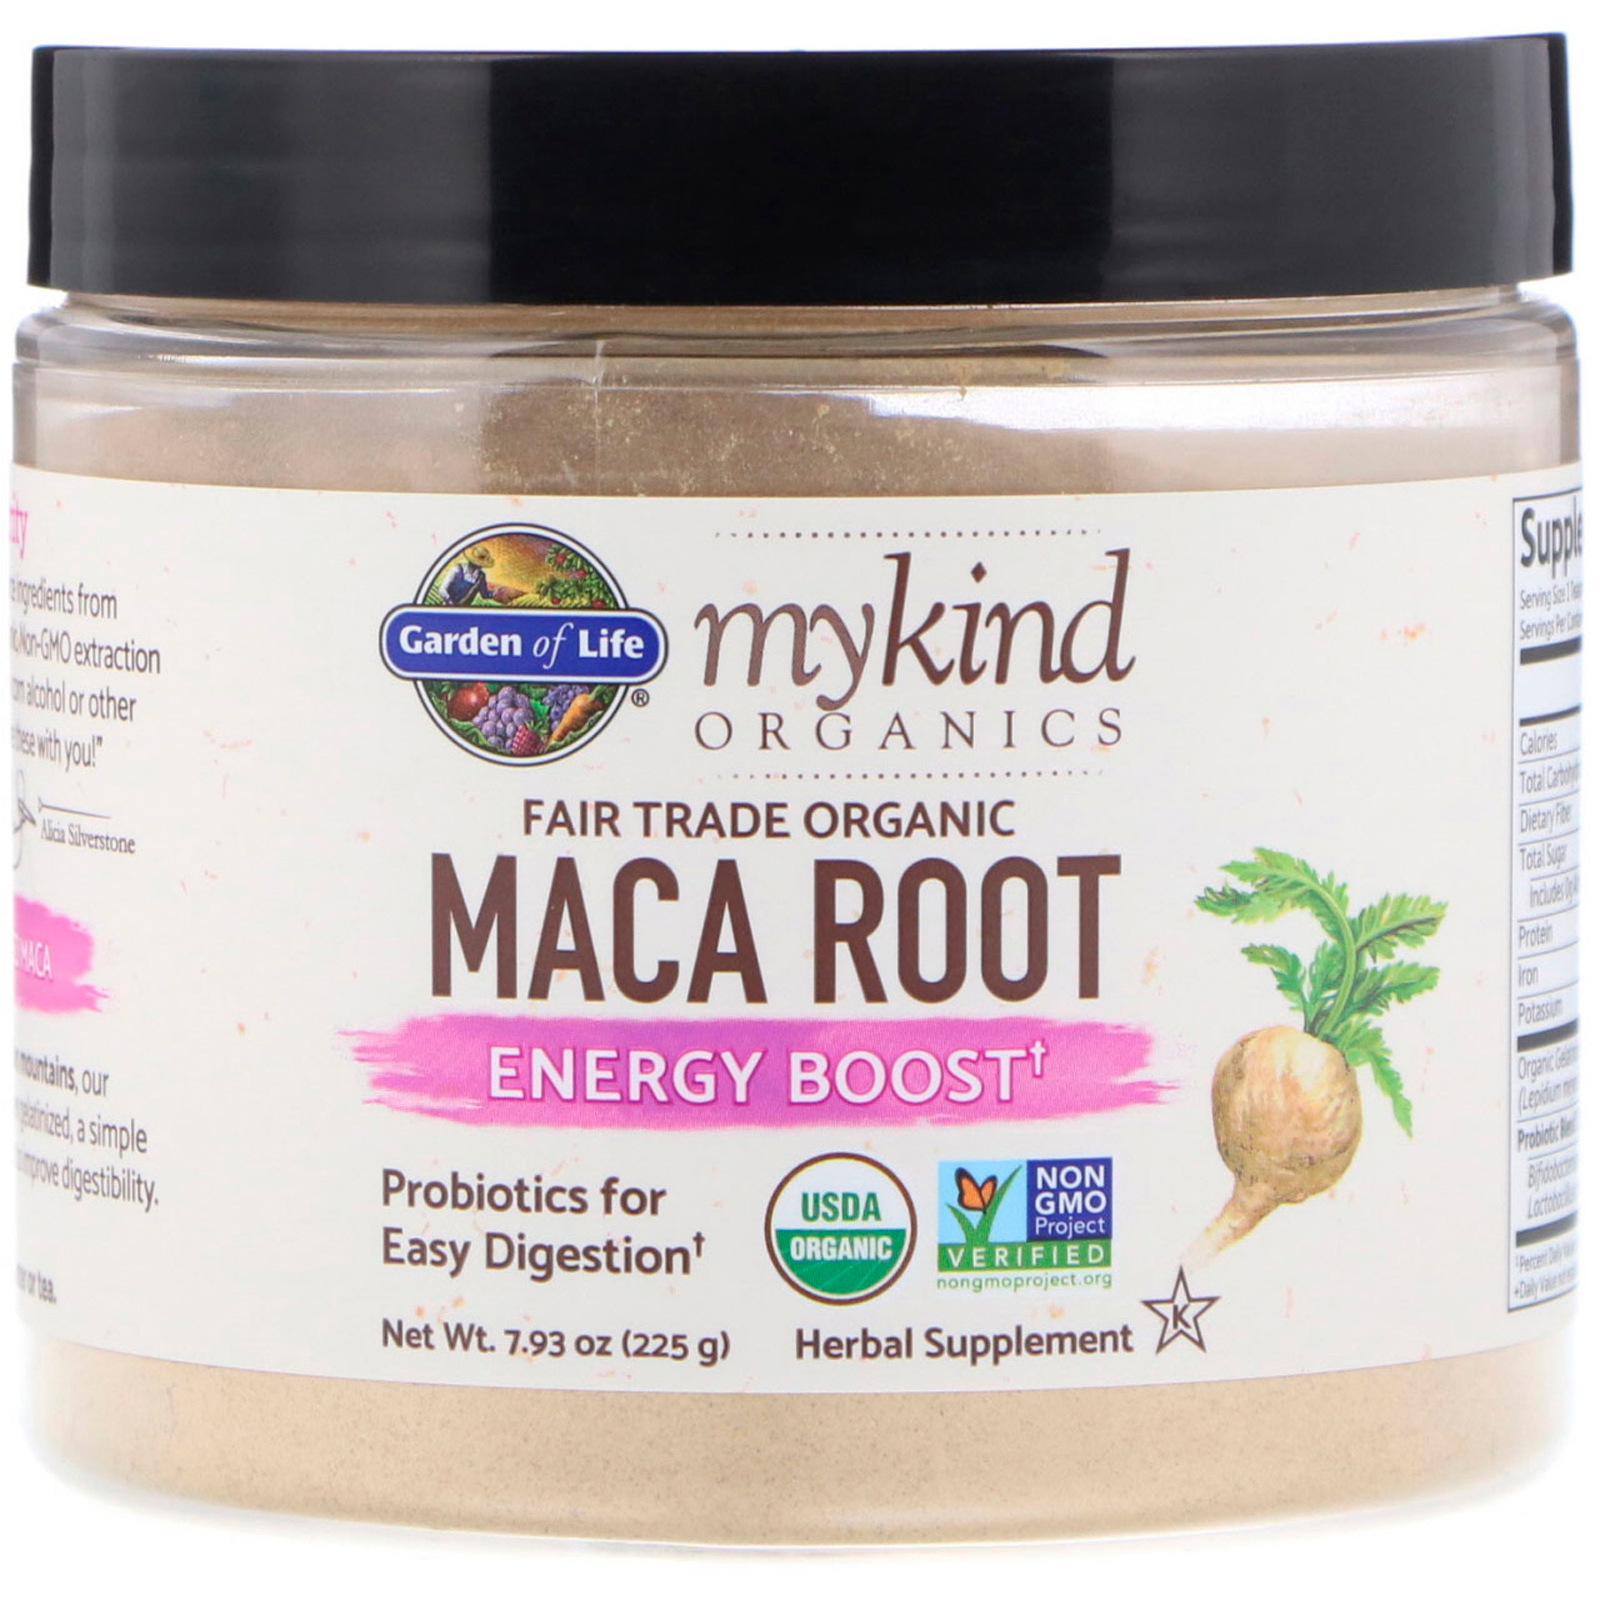 جذر الماكا و gelatinized peruvian maca root